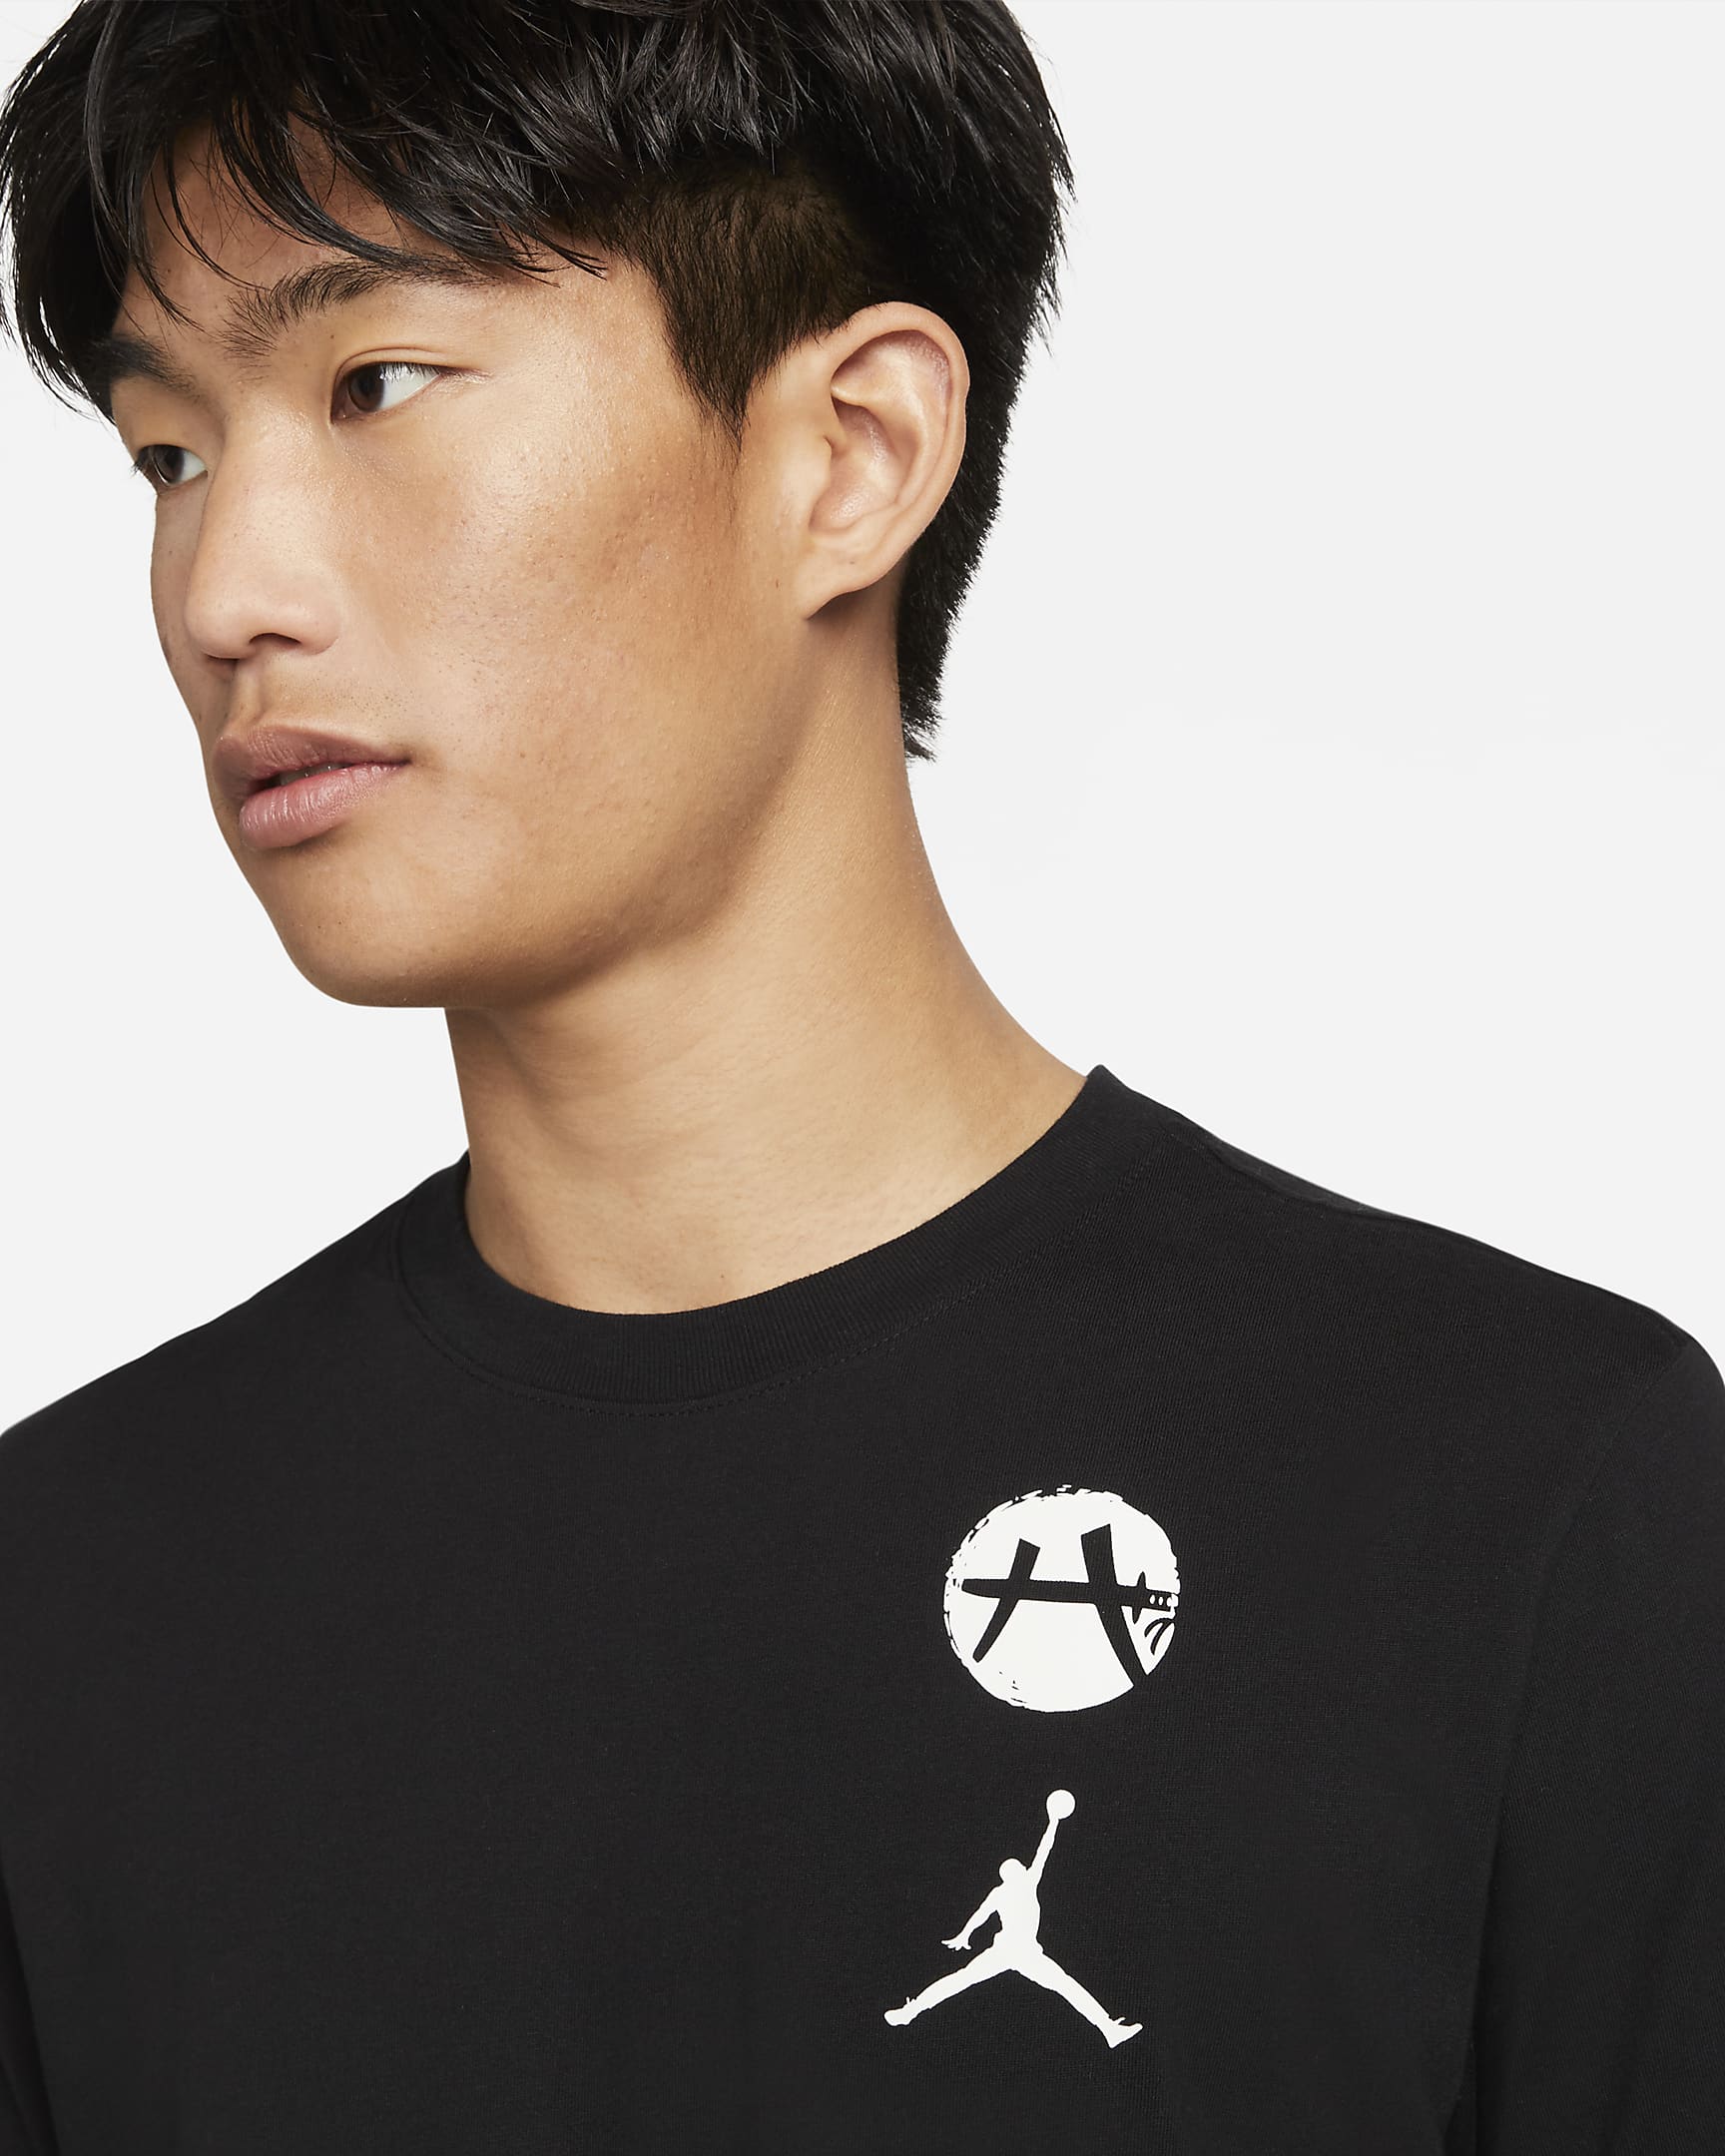 Rui NTR BS Men's T-Shirt. Nike JP